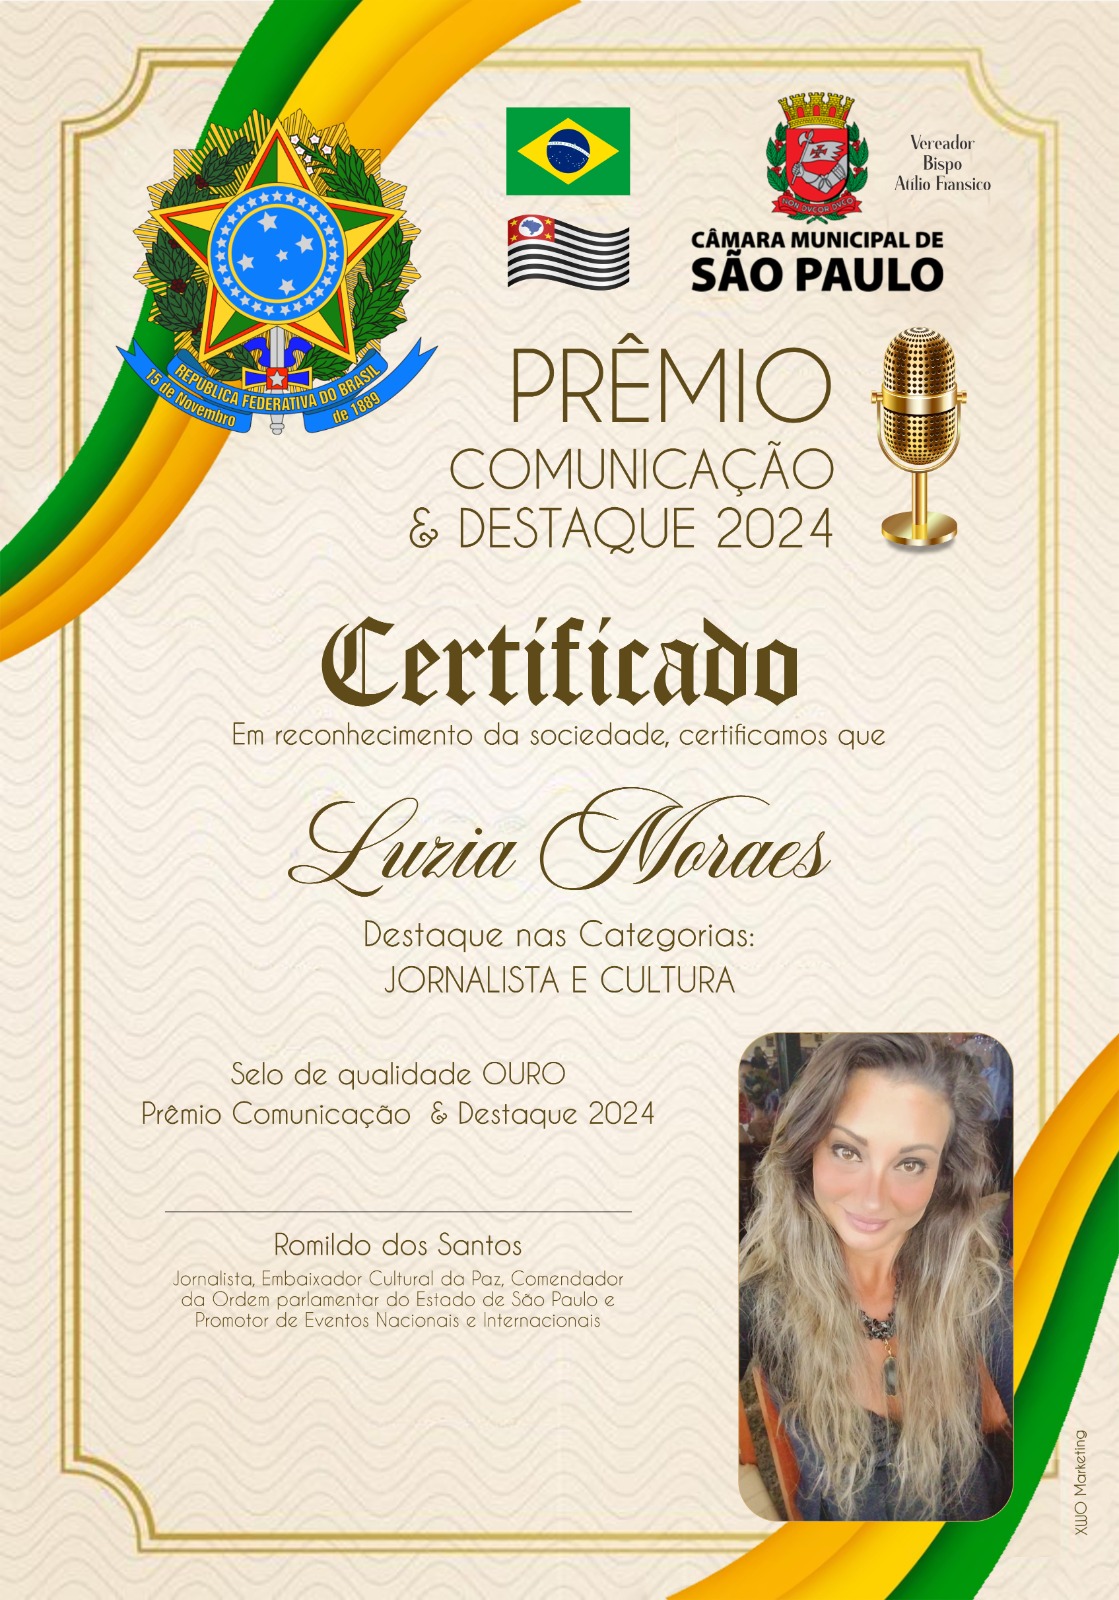 LUZIA MORAES RECEBERÁ O PRÊMIO NA CÂMARA MUNICIPAL DE SÃO PAULO